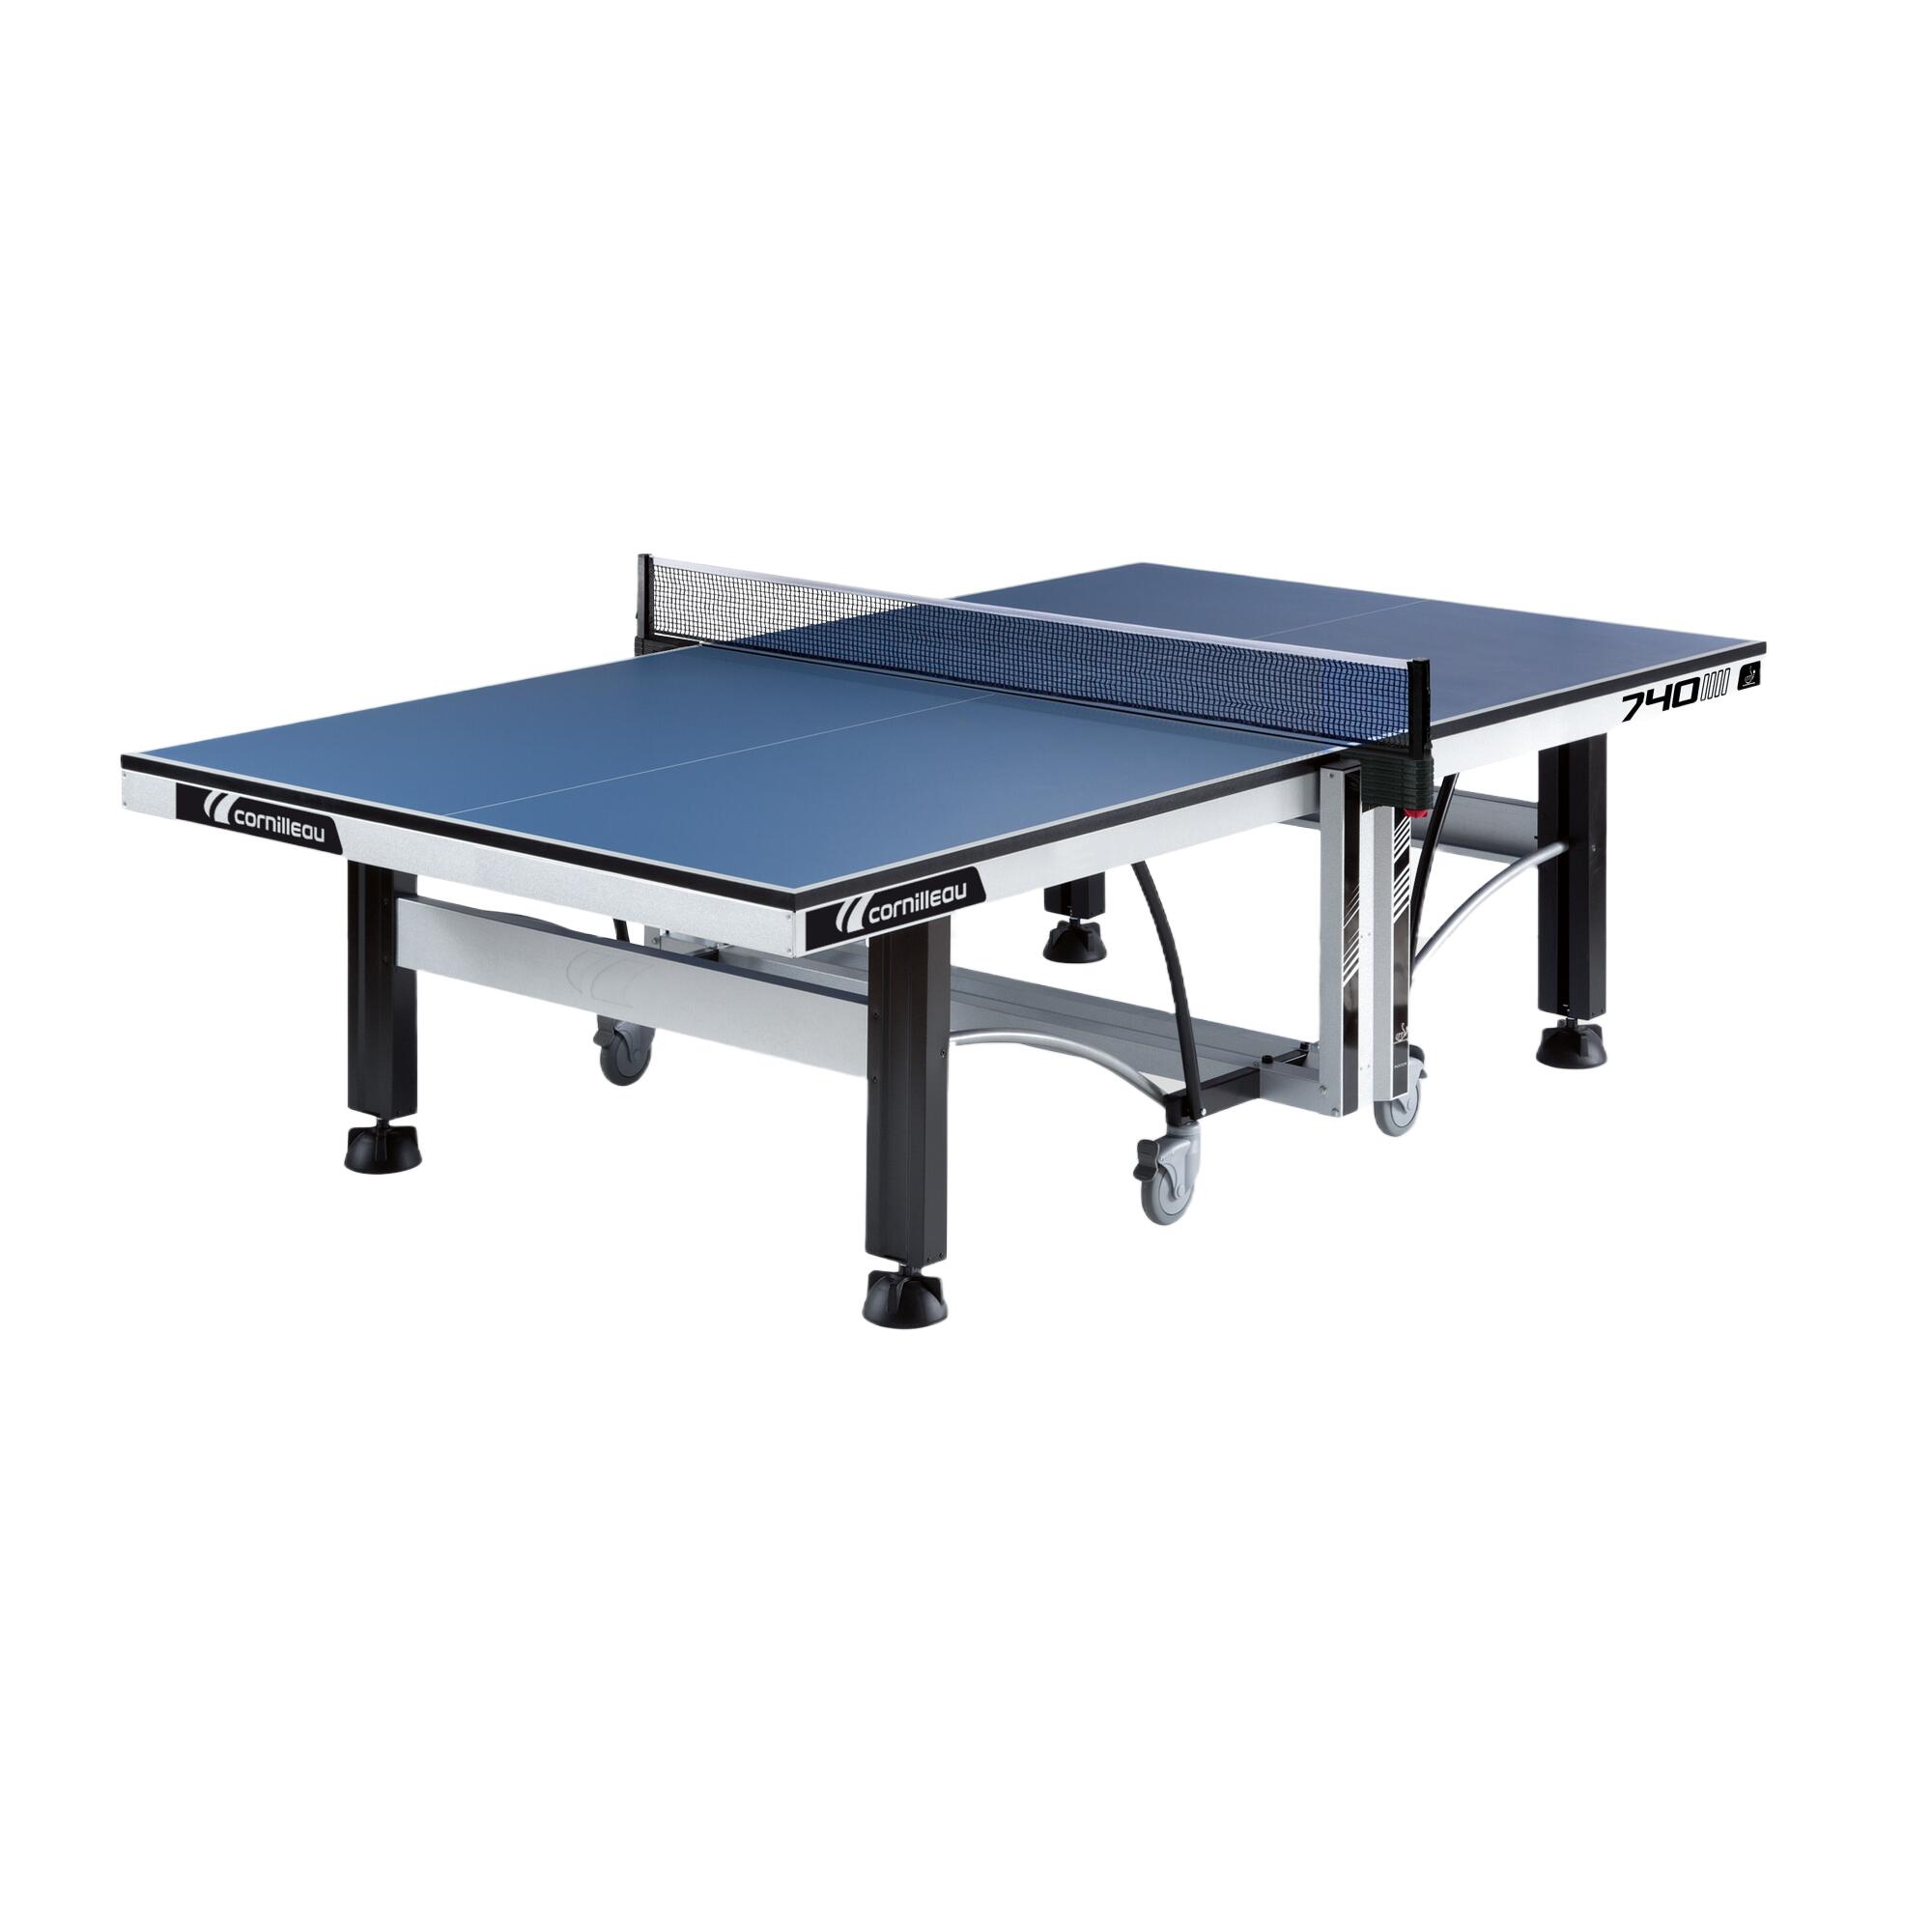 740 ITTF Indoor Club Table Tennis Table 1/8